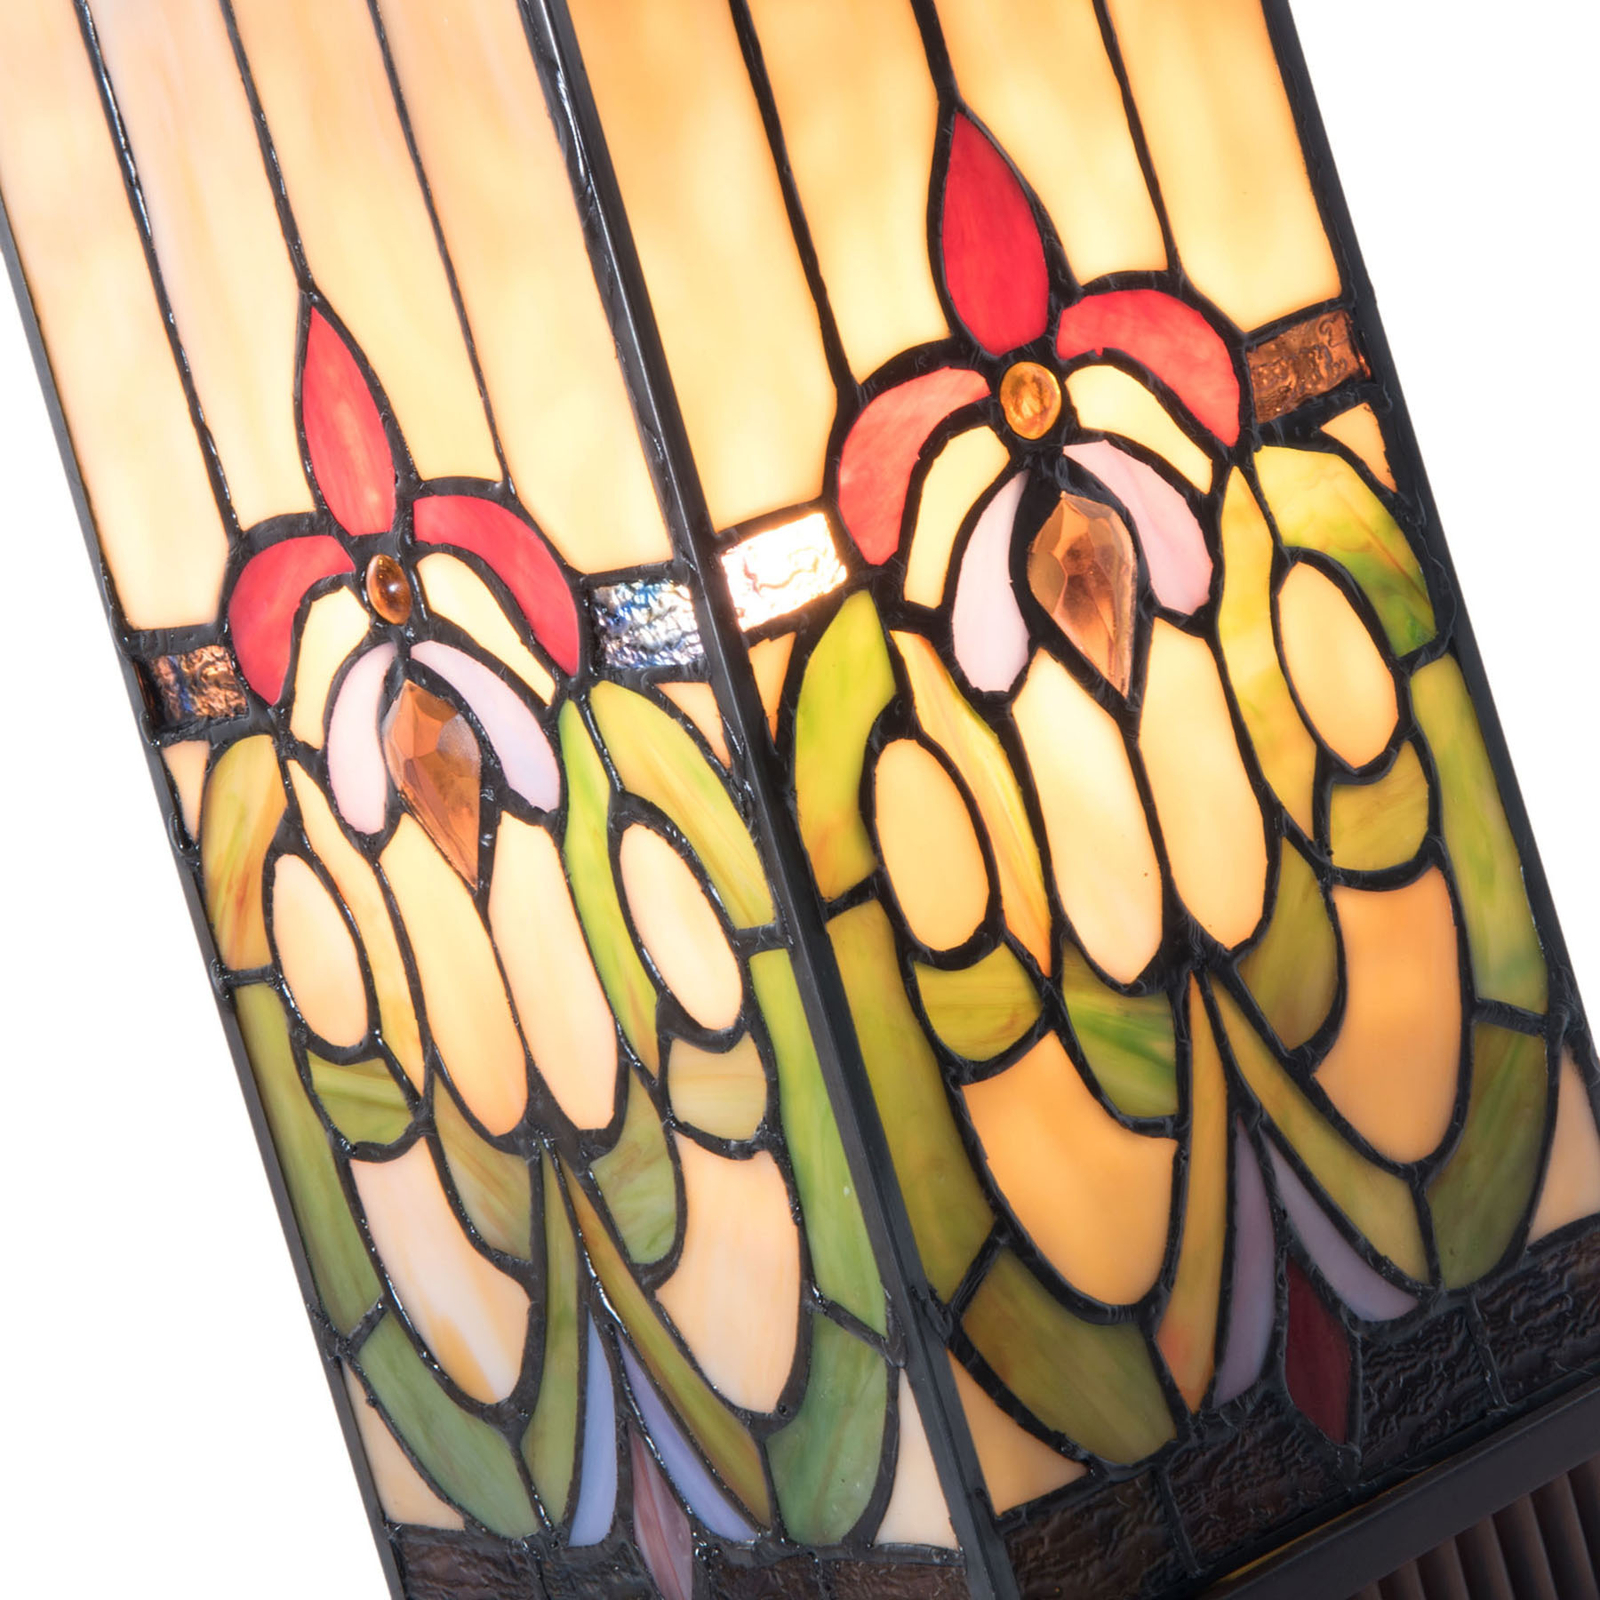 Stolní lampa 5907 pestré stínidlo ve stylu Tiffany